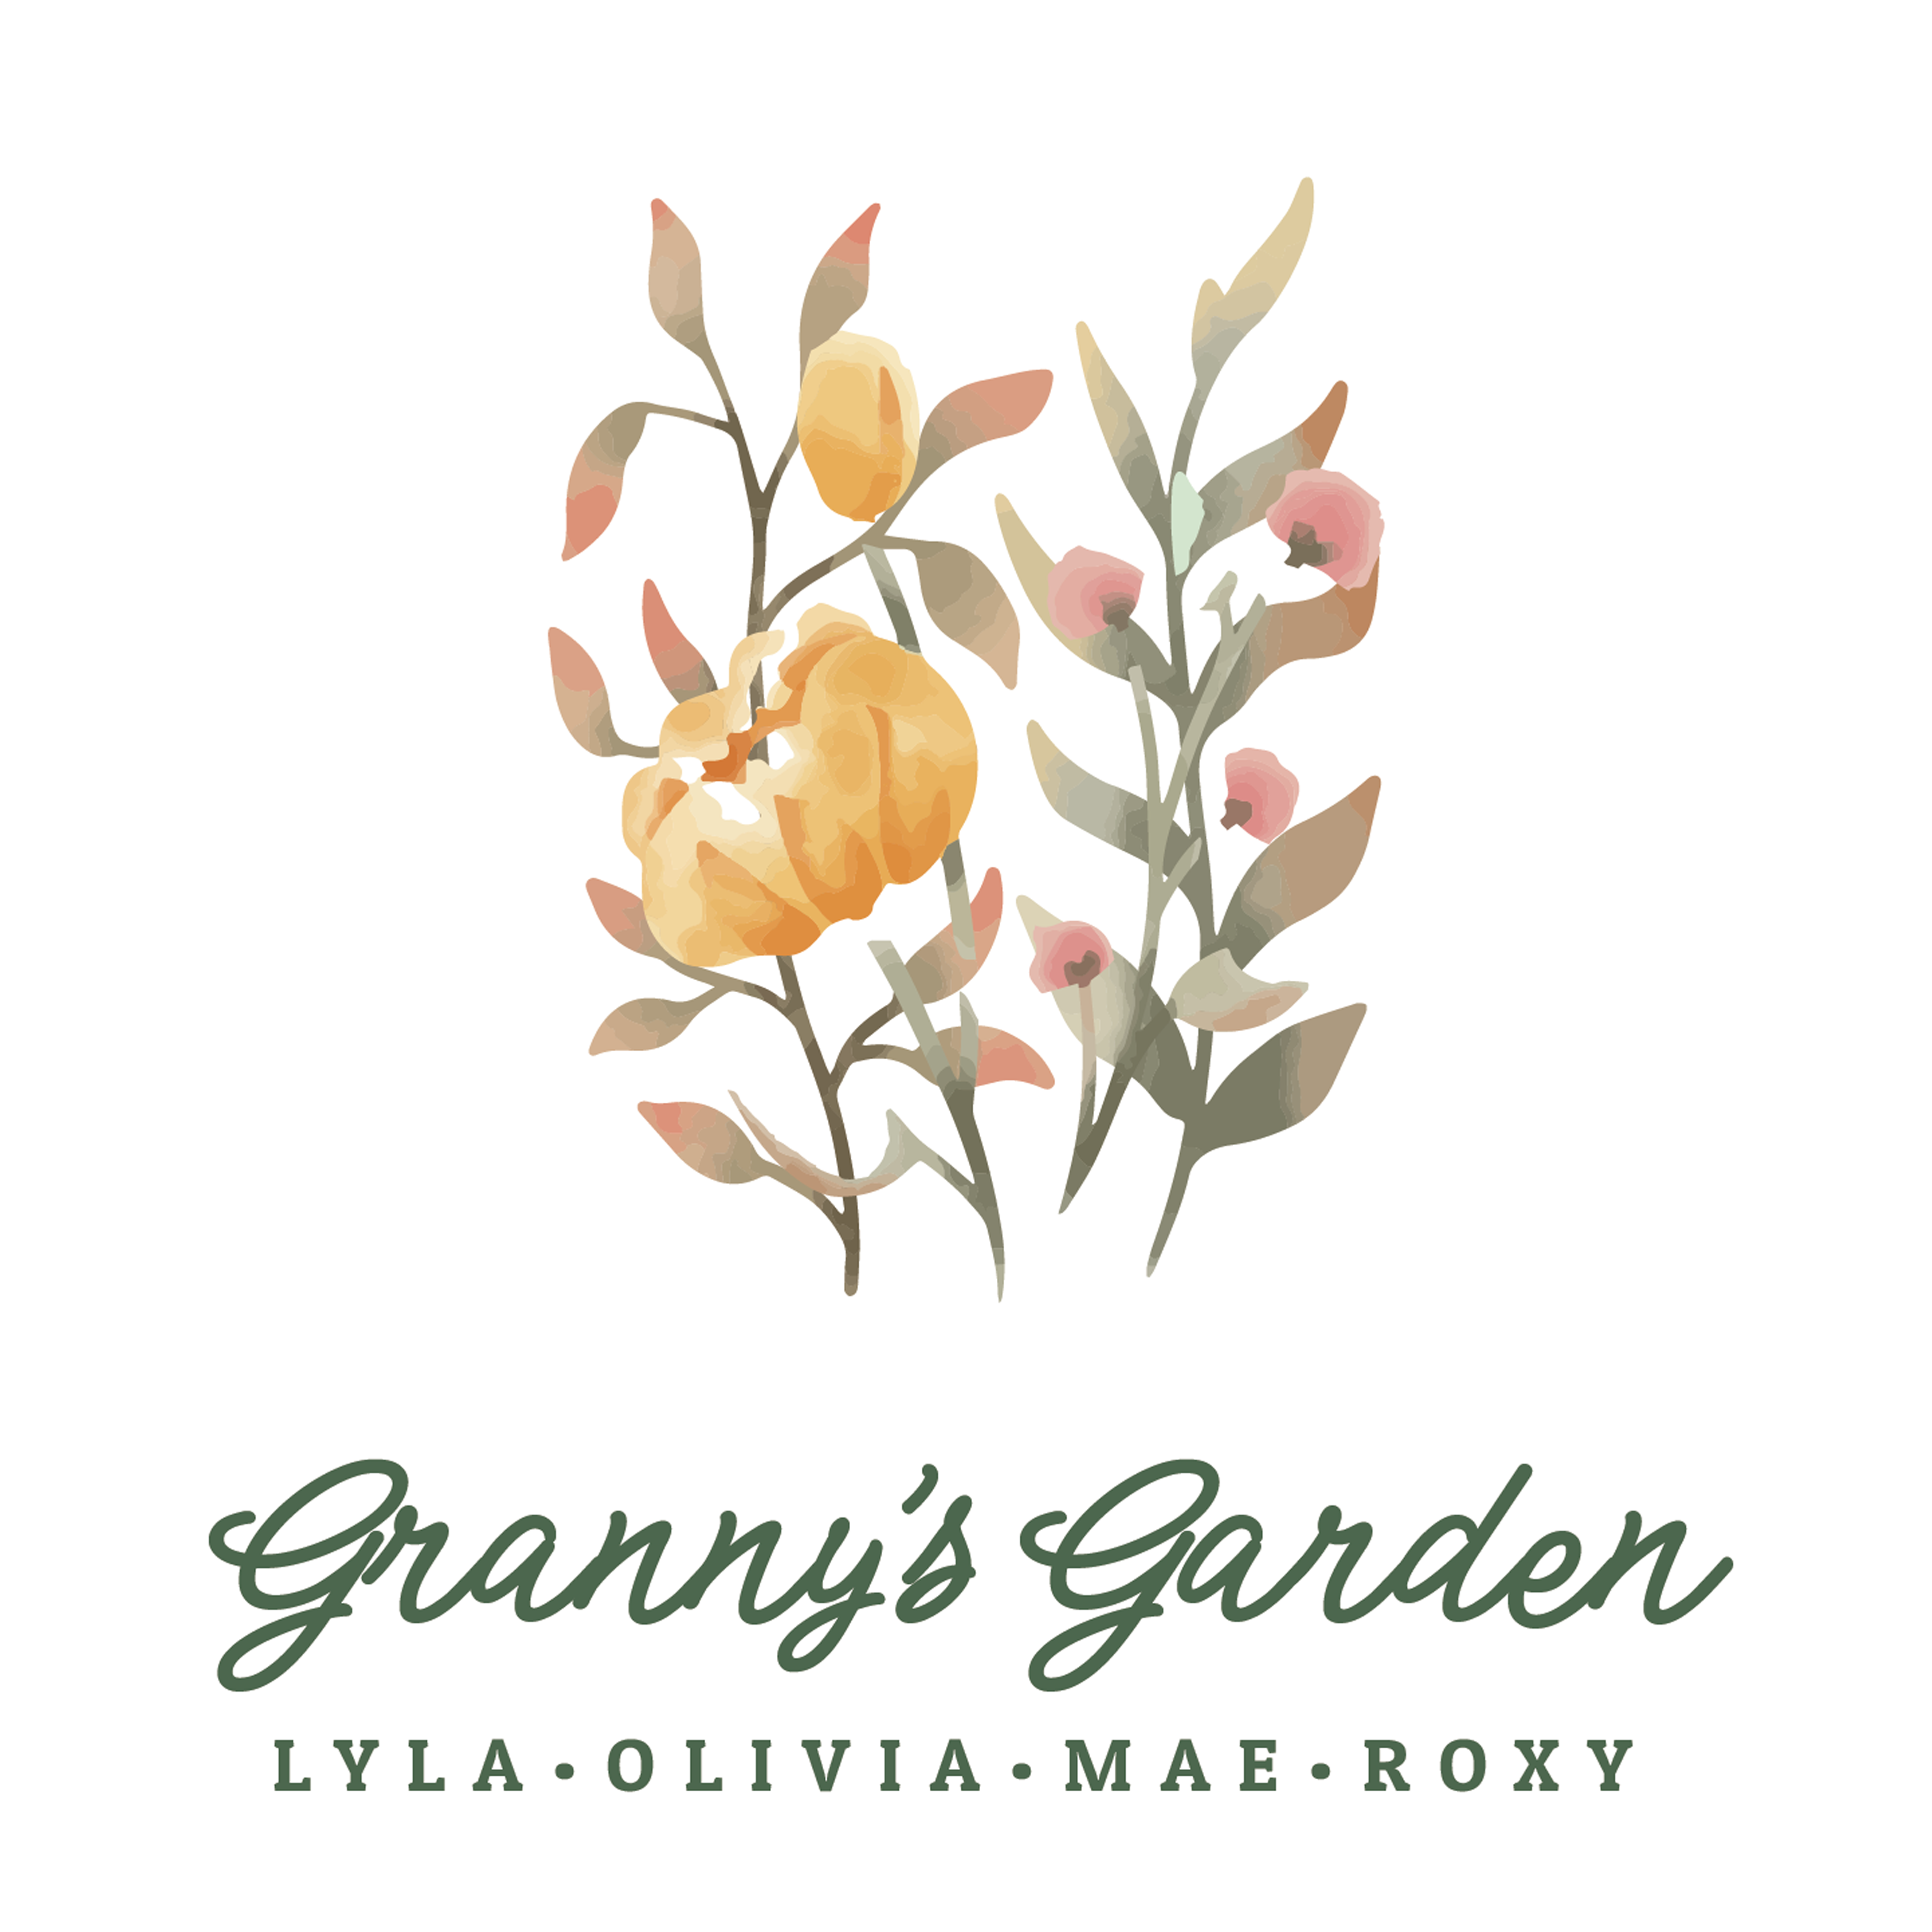 grannys-garden-design-theme.png